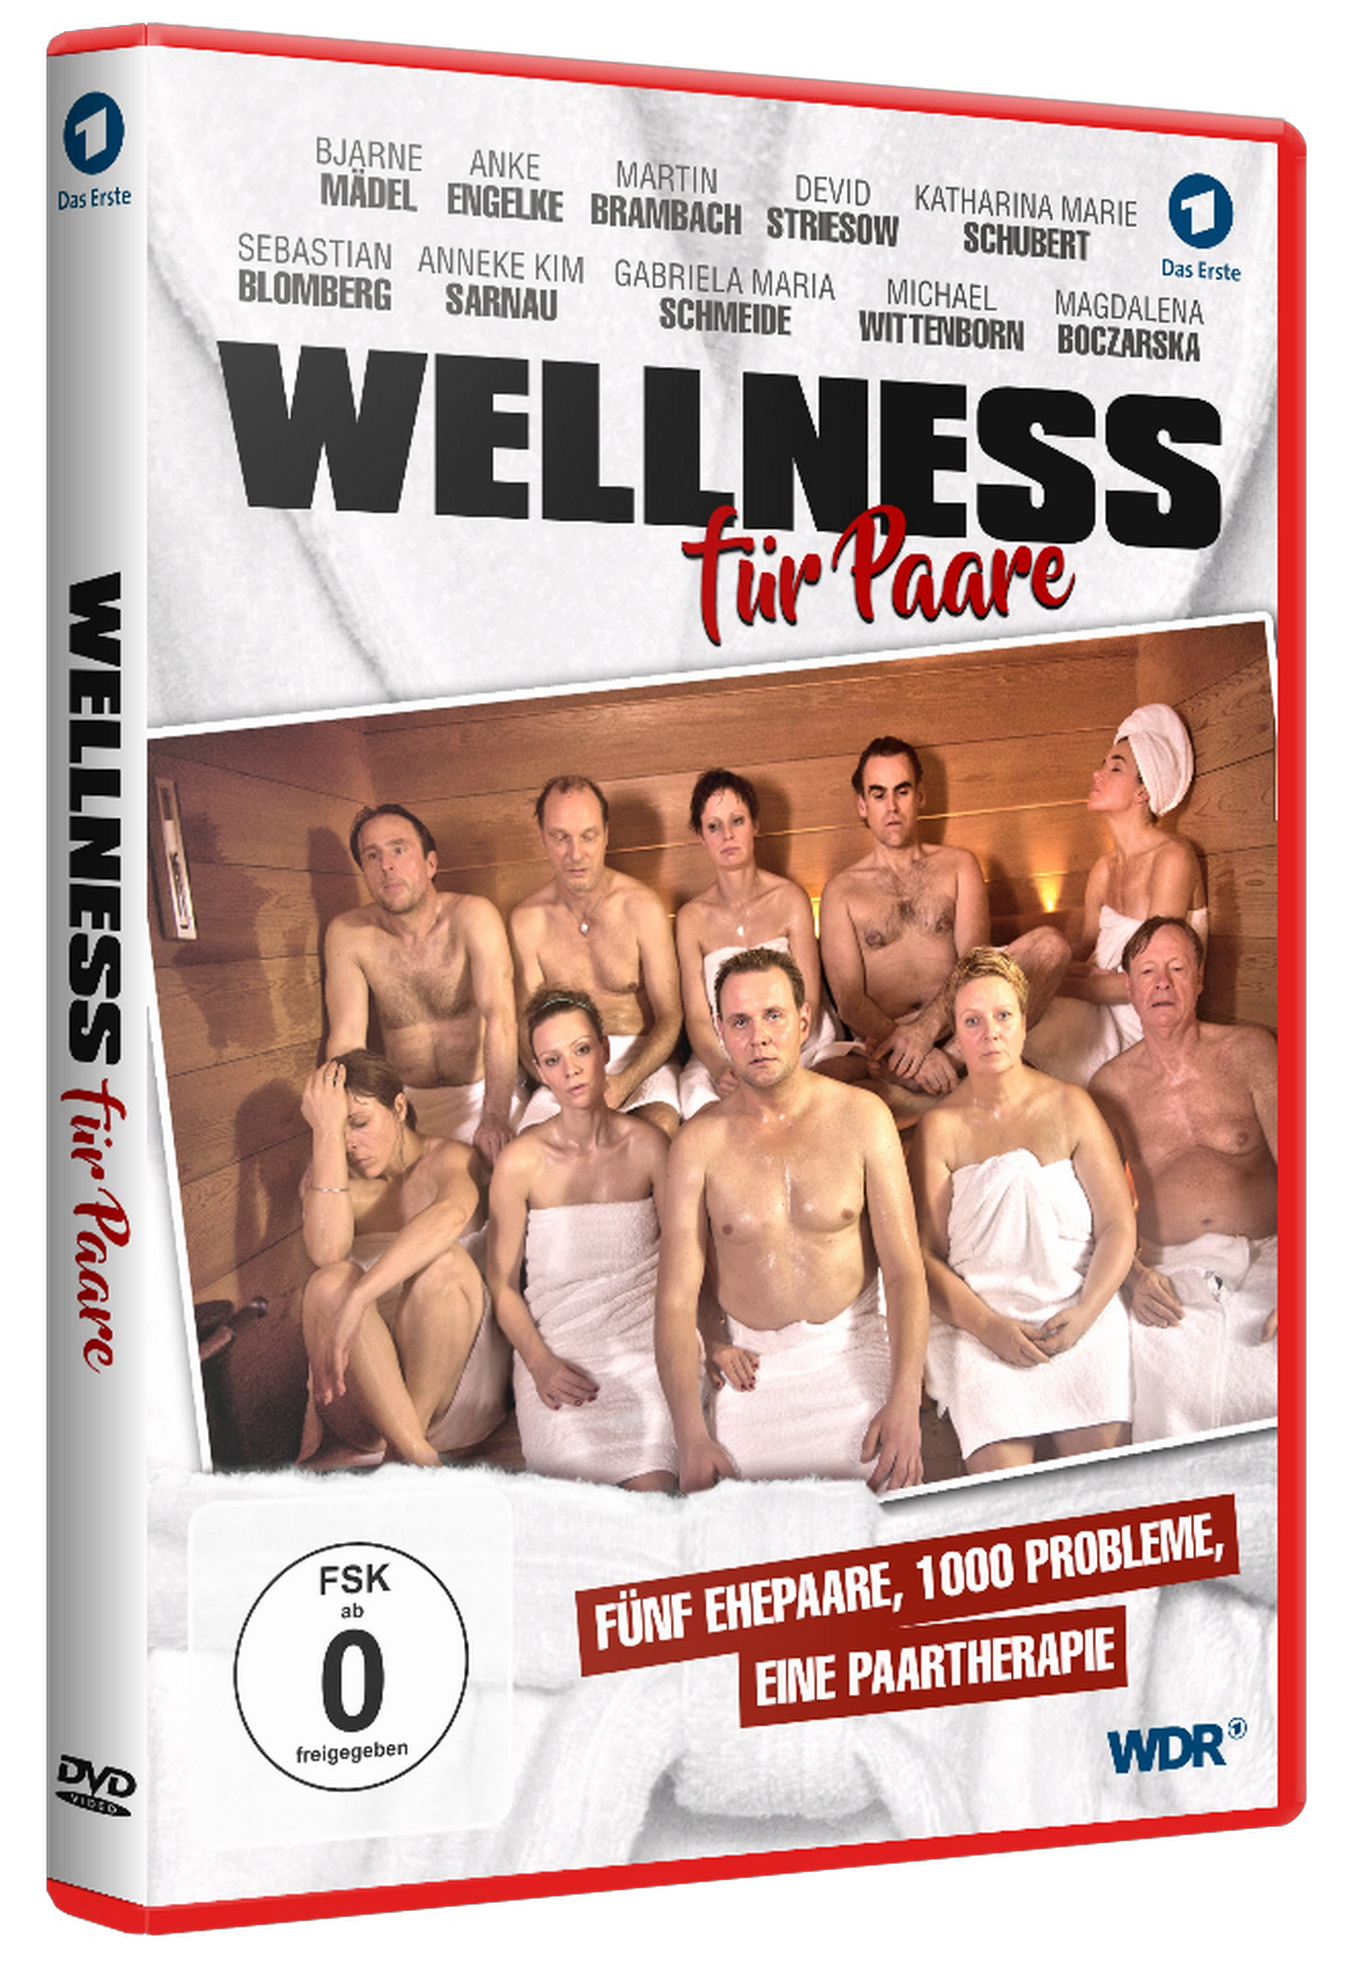 Für Paare Wellness DVD